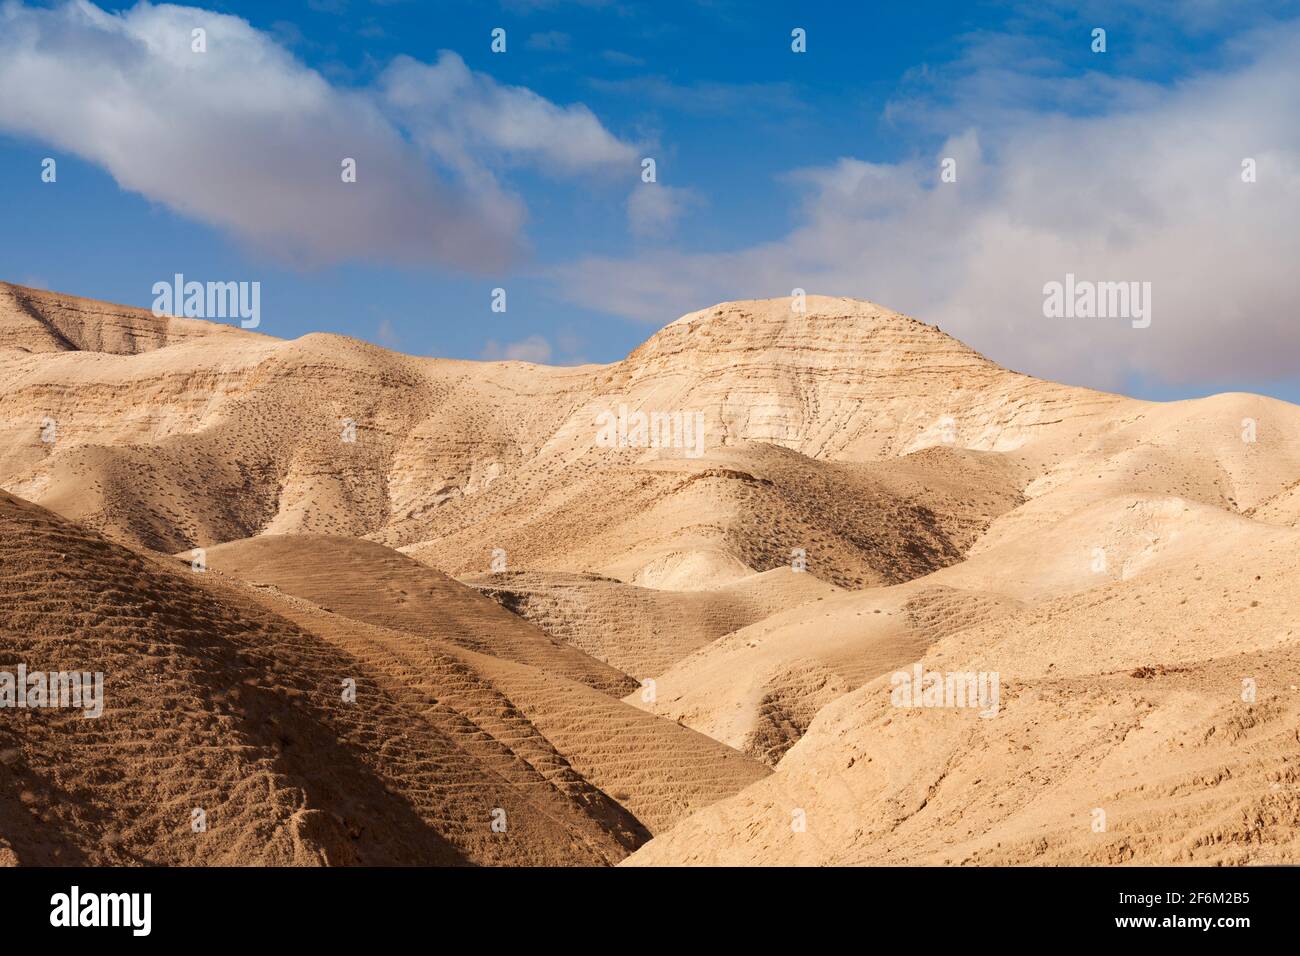 Israël, désert du Néguev, paysage désertique aride Banque D'Images